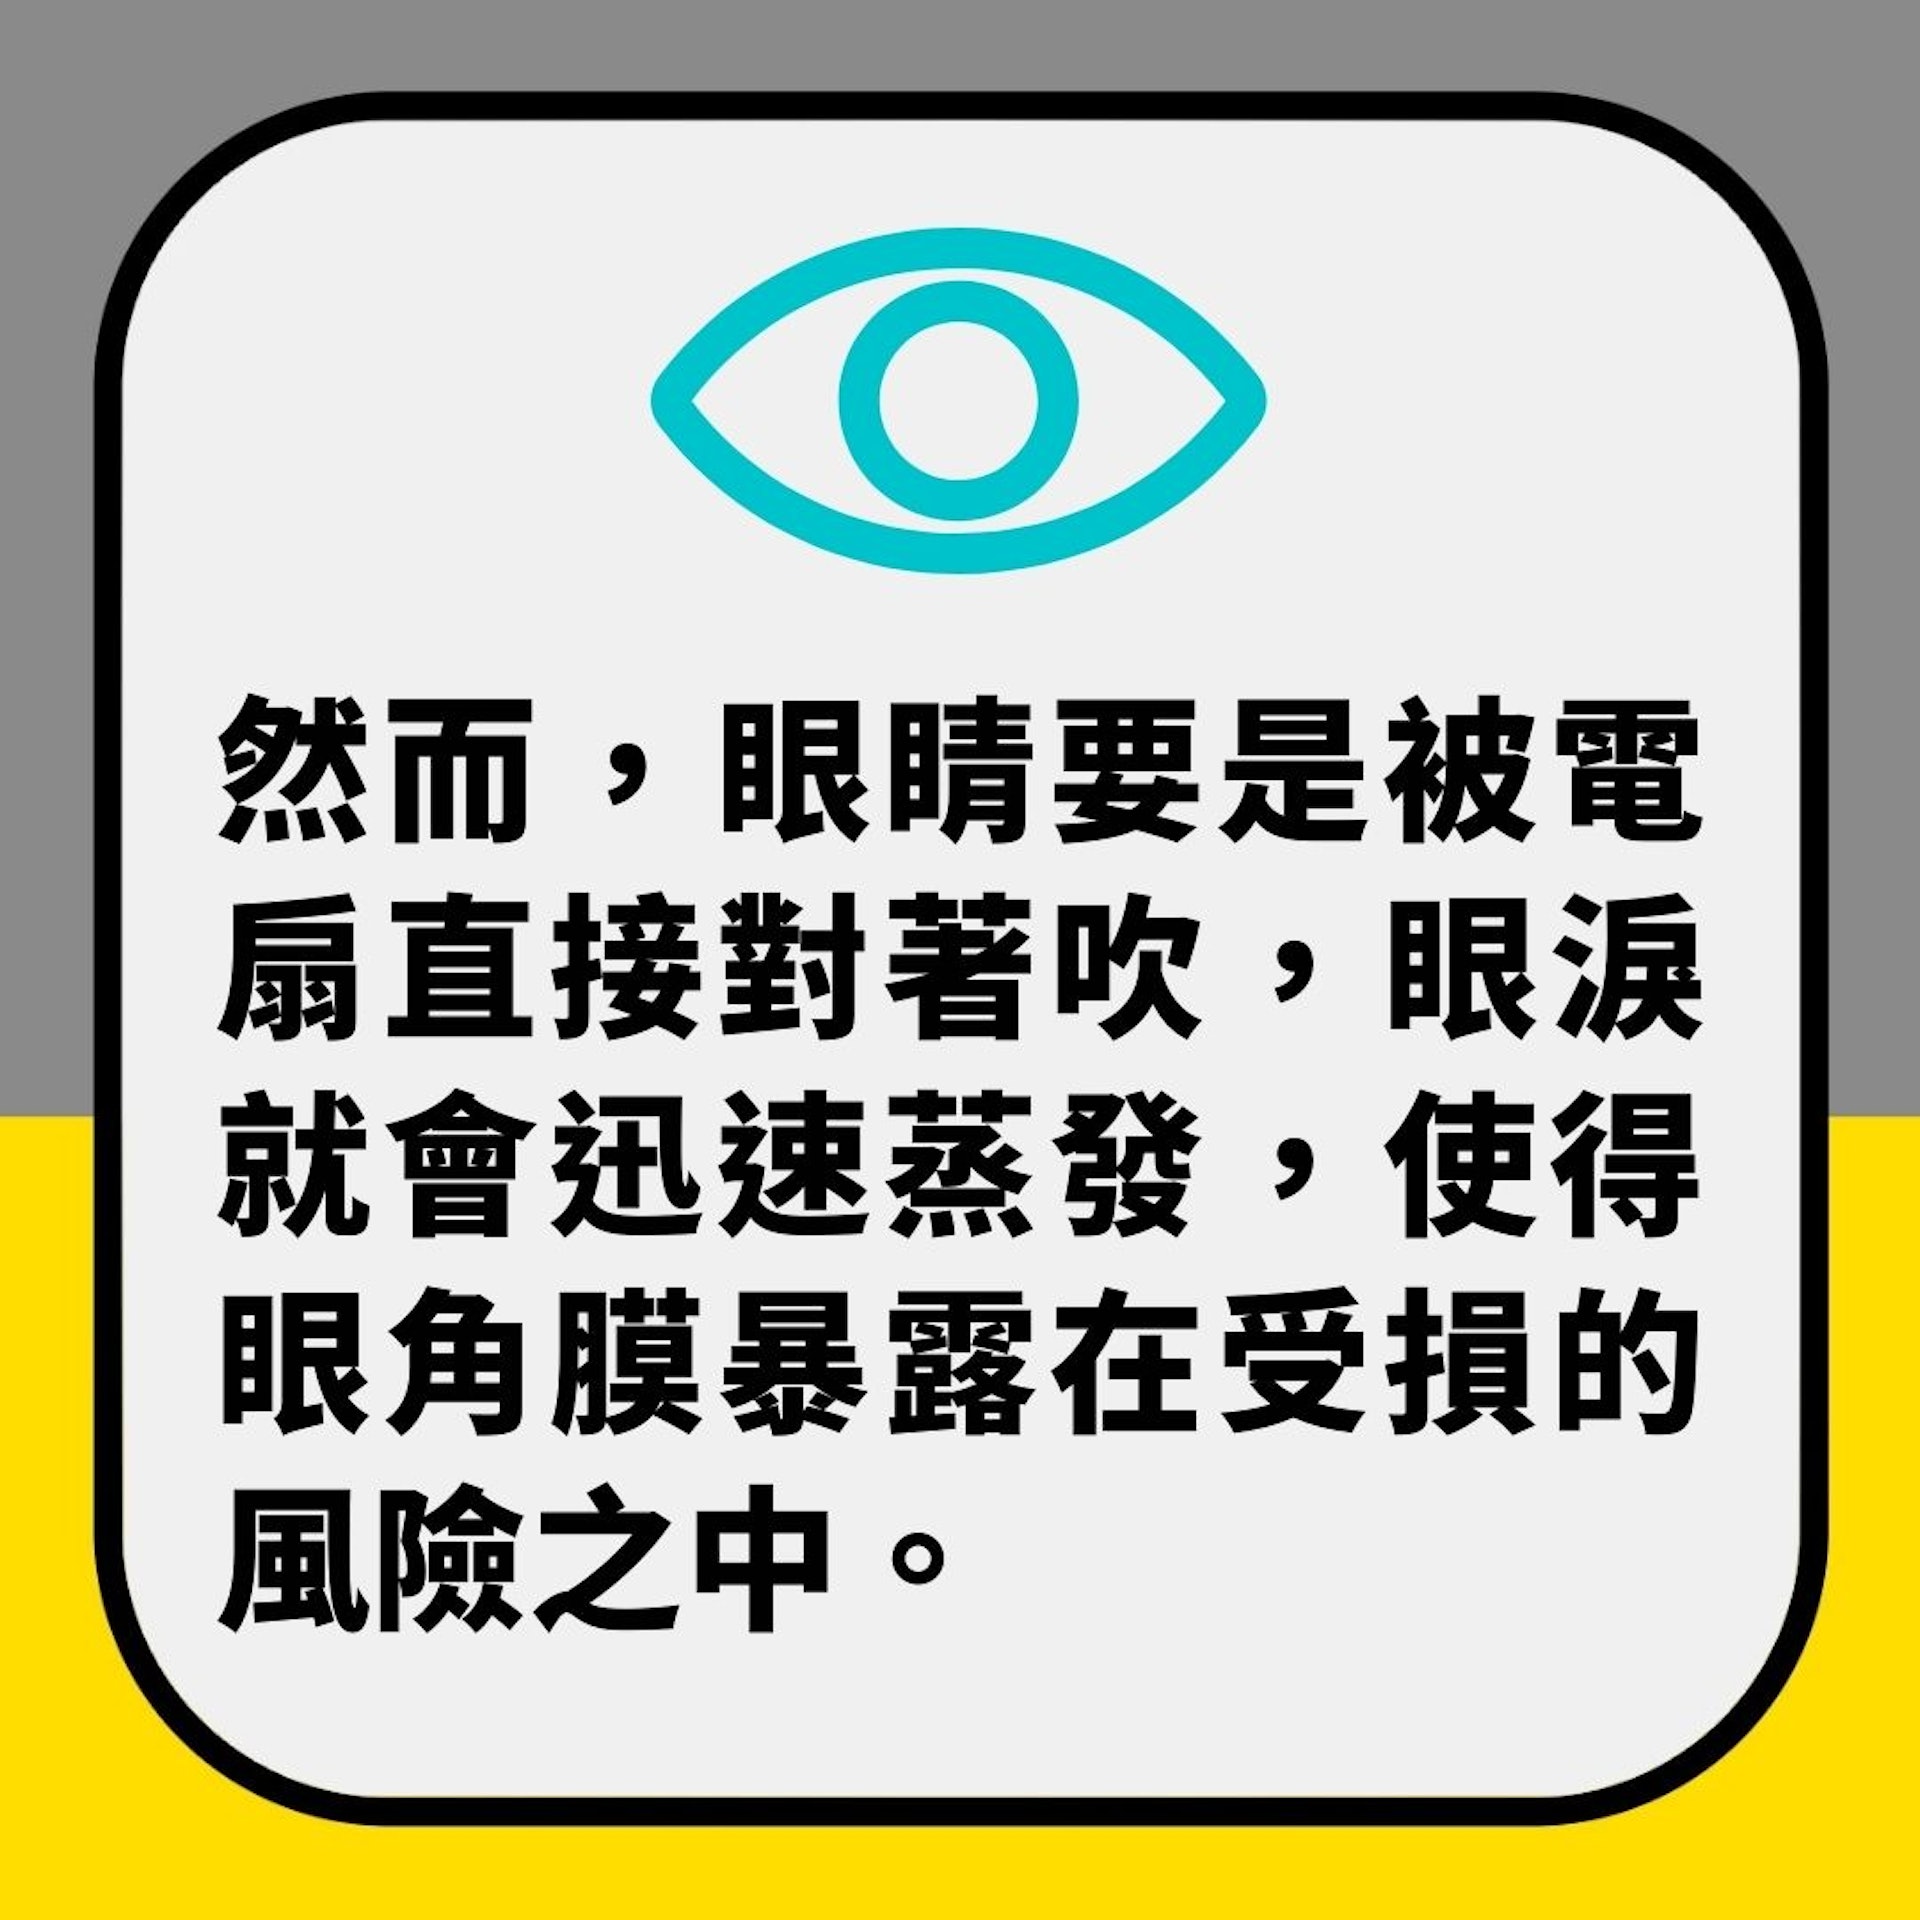 【風扇仔】眼科醫生警告手提風扇唔好咁用　否則可損眼角膜同視力（01製圖）